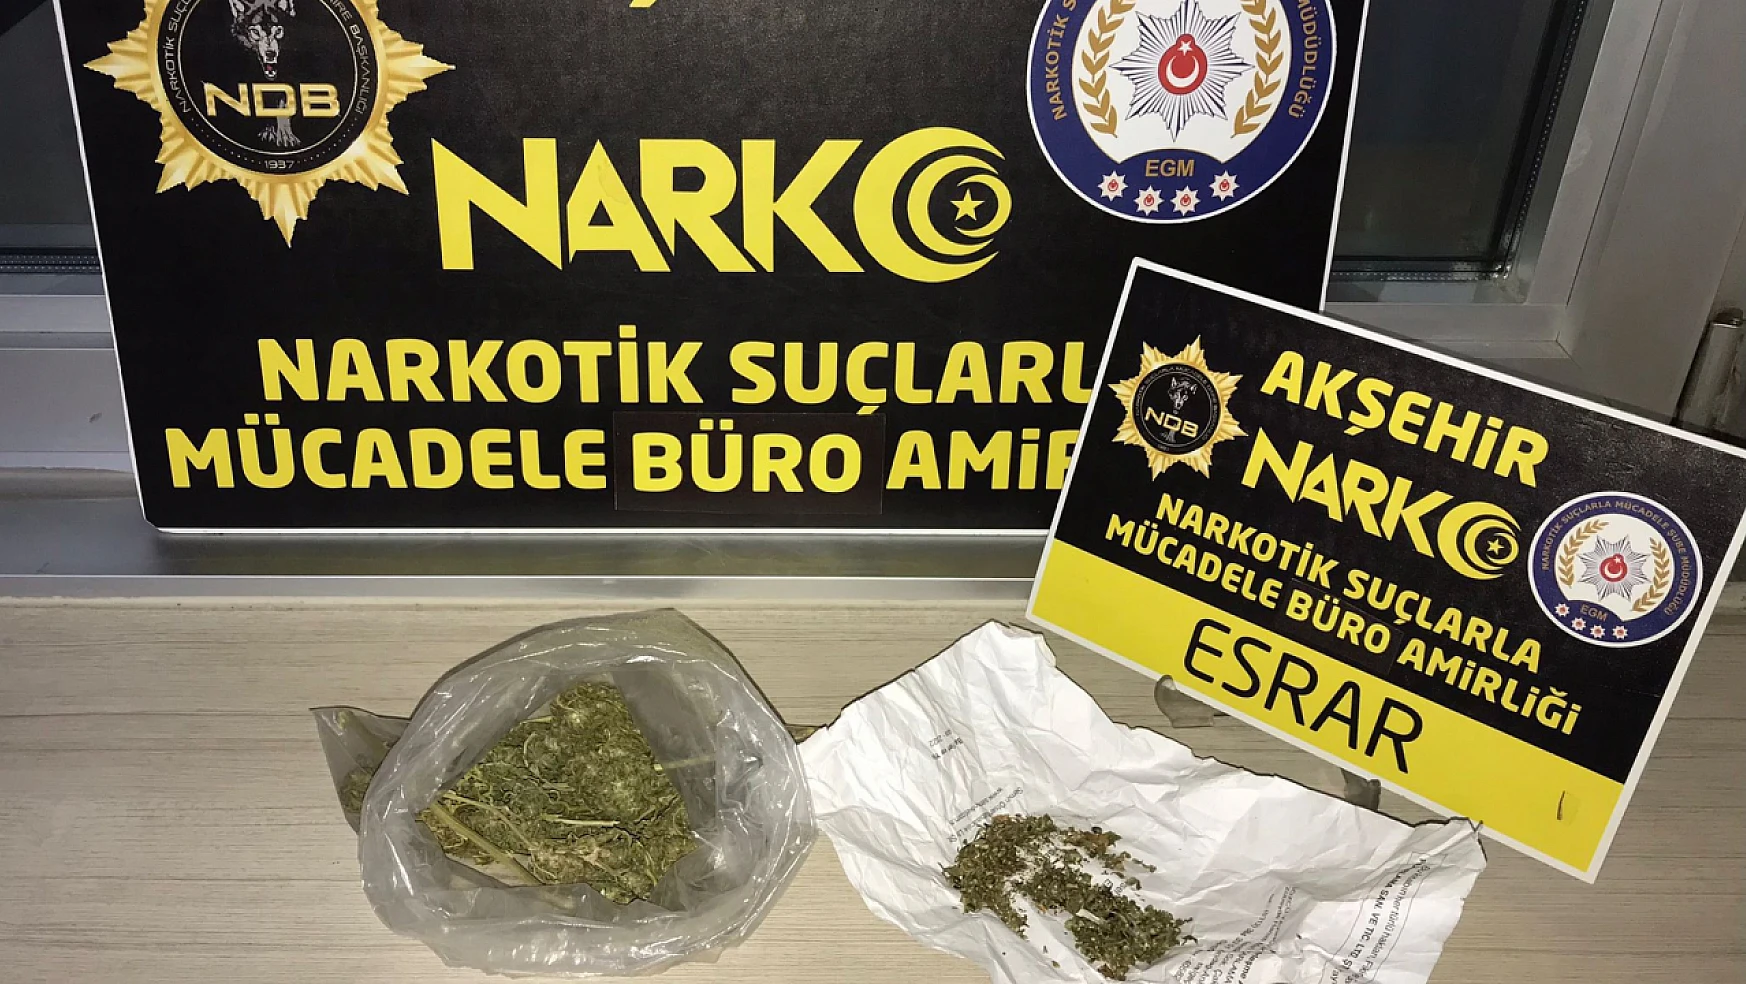 Akşehir'de uyuşturucu operasyonları: 6 gözaltı